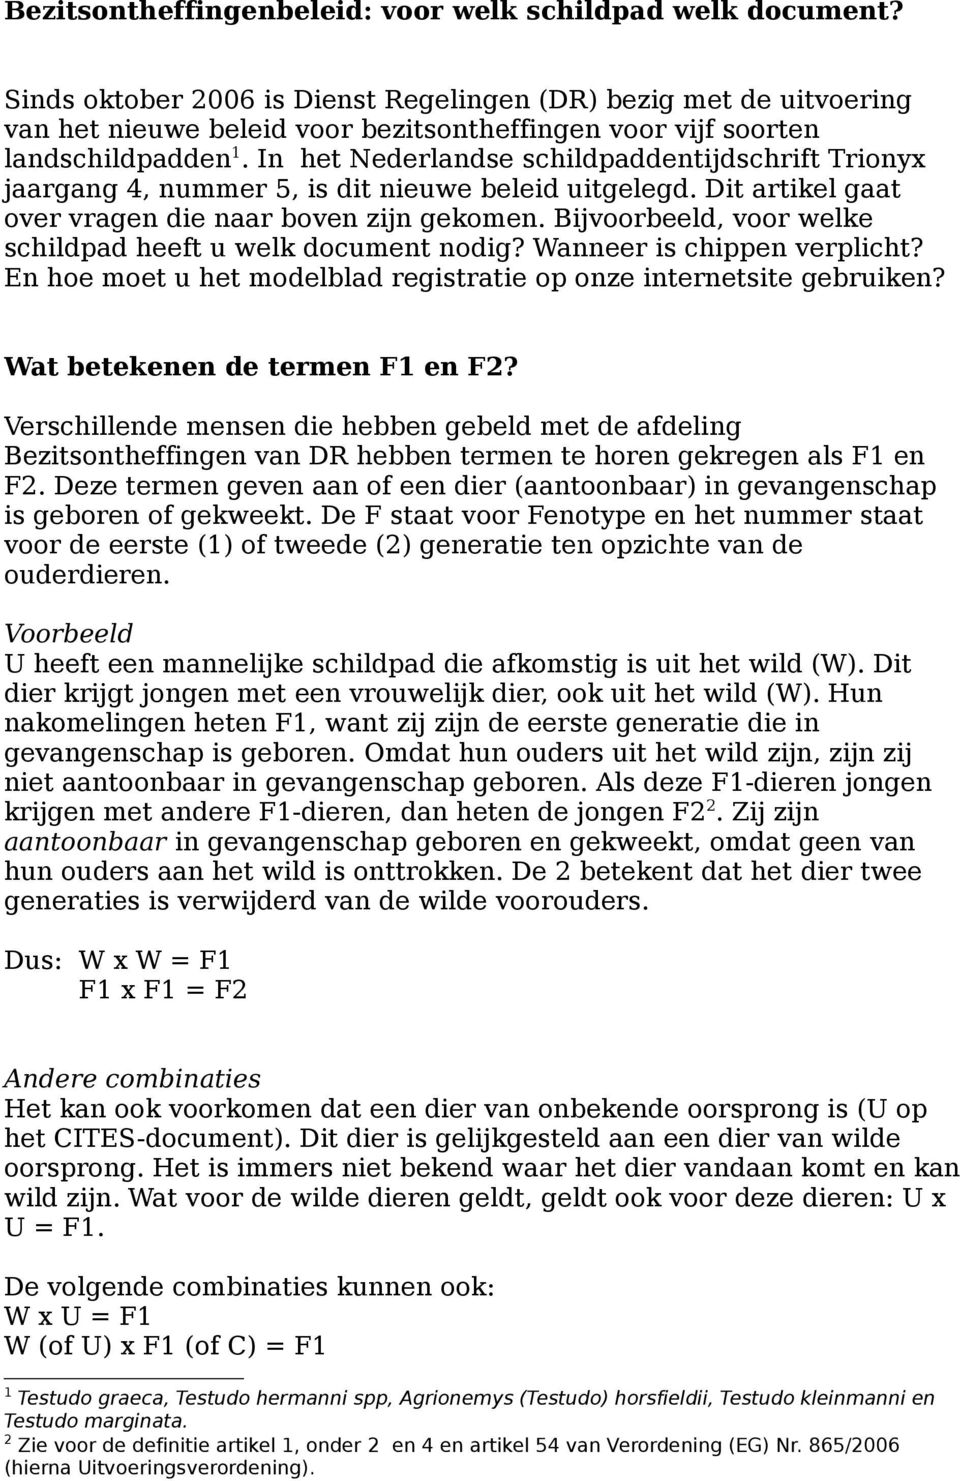 In het Nederlandse schildpaddentijdschrift Trionyx jaargang 4, nummer 5, is dit nieuwe beleid uitgelegd. Dit artikel gaat over vragen die naar boven zijn gekomen.